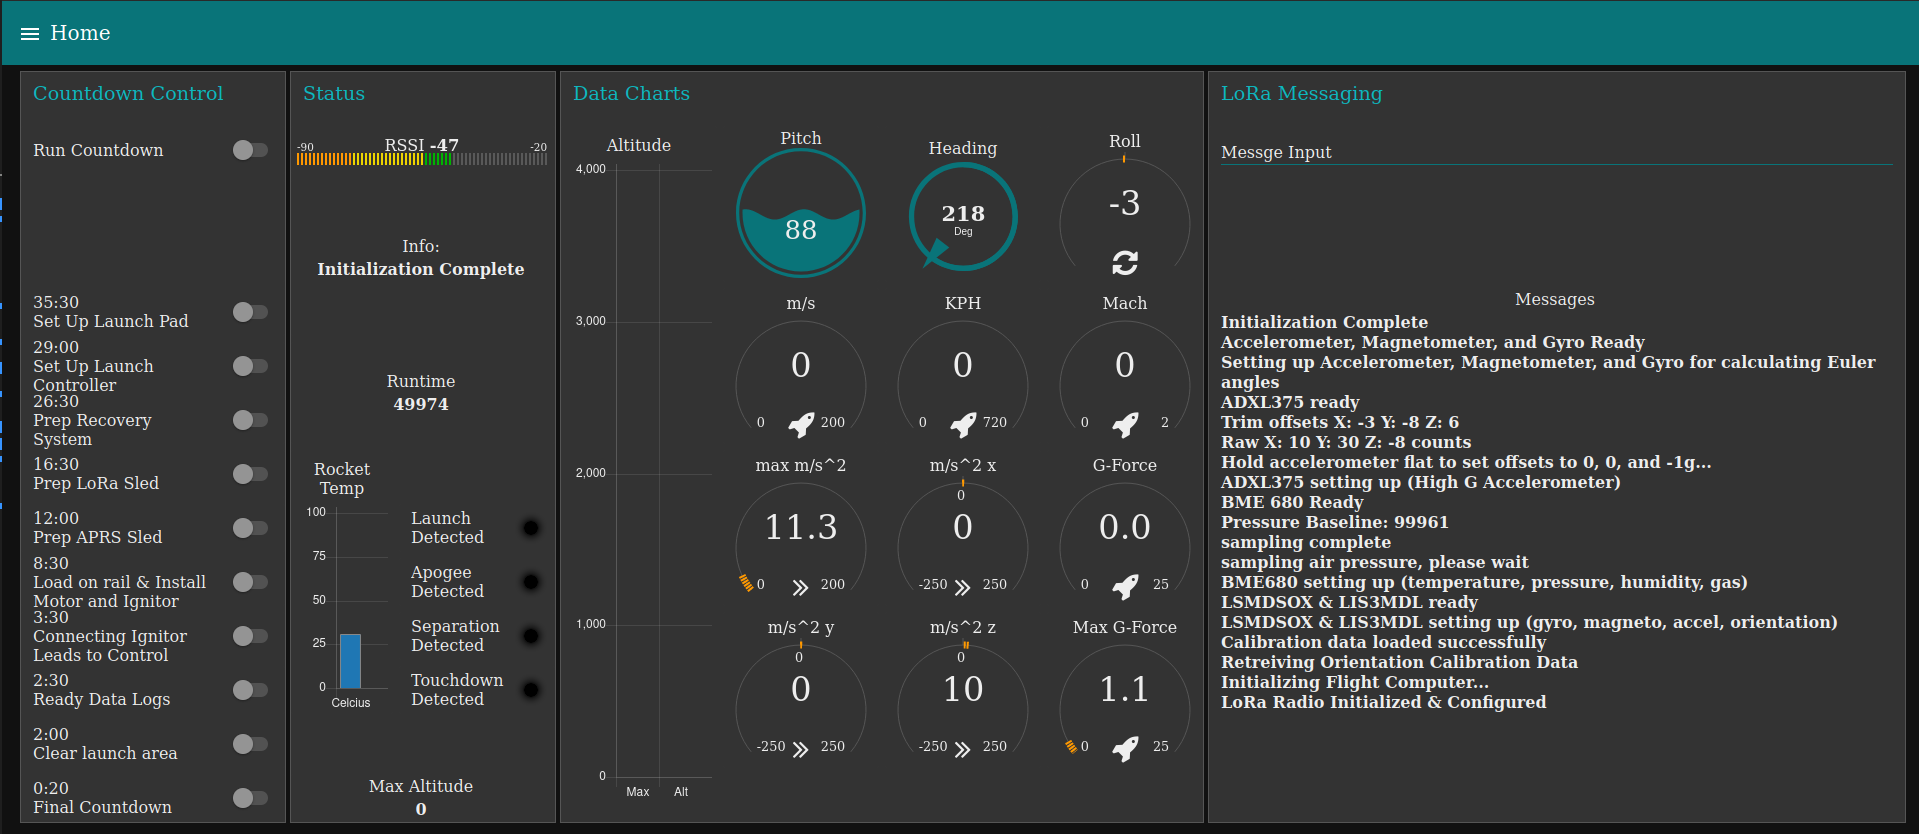 A UI Dashboard displaying rocket Telemetry